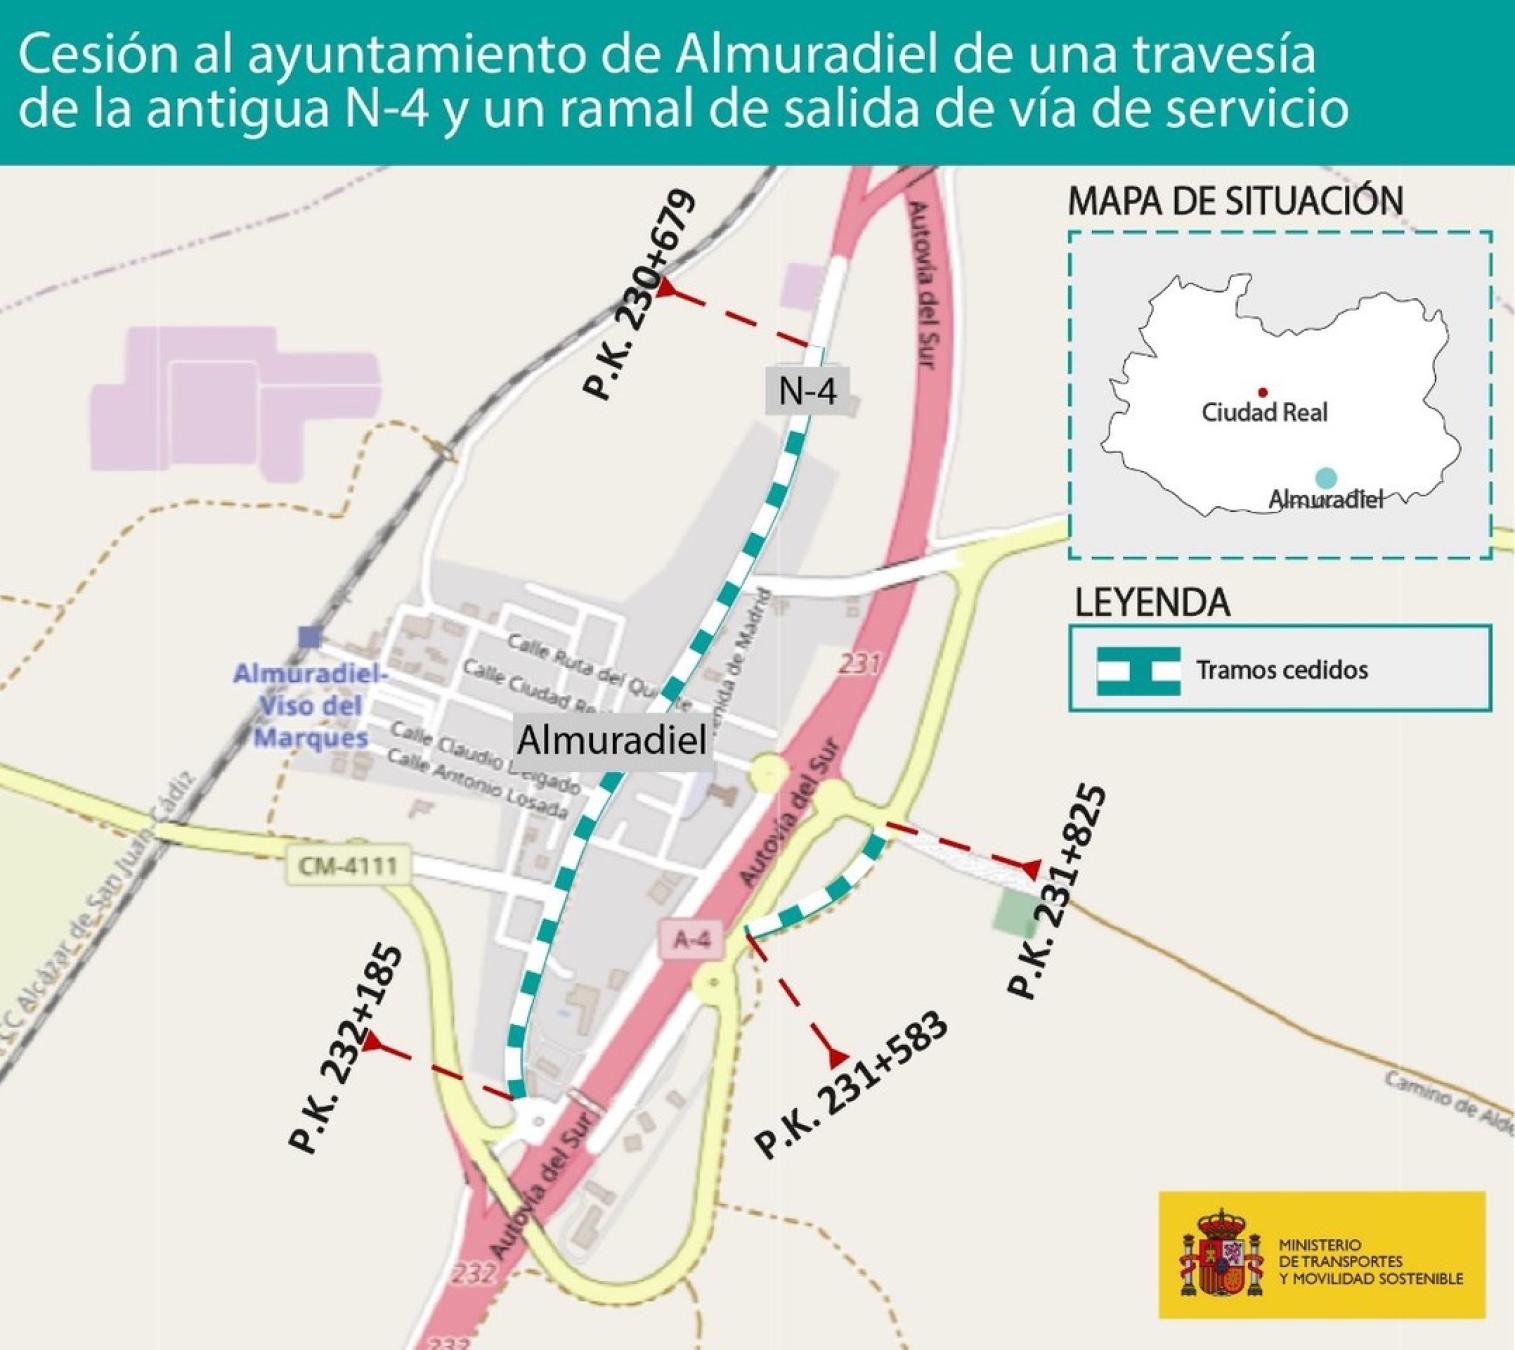 El Gobierno autoriza licitar por 26,5 millones de euros un contrato para la conservación de carreteras en la provincia de Ciudad Real